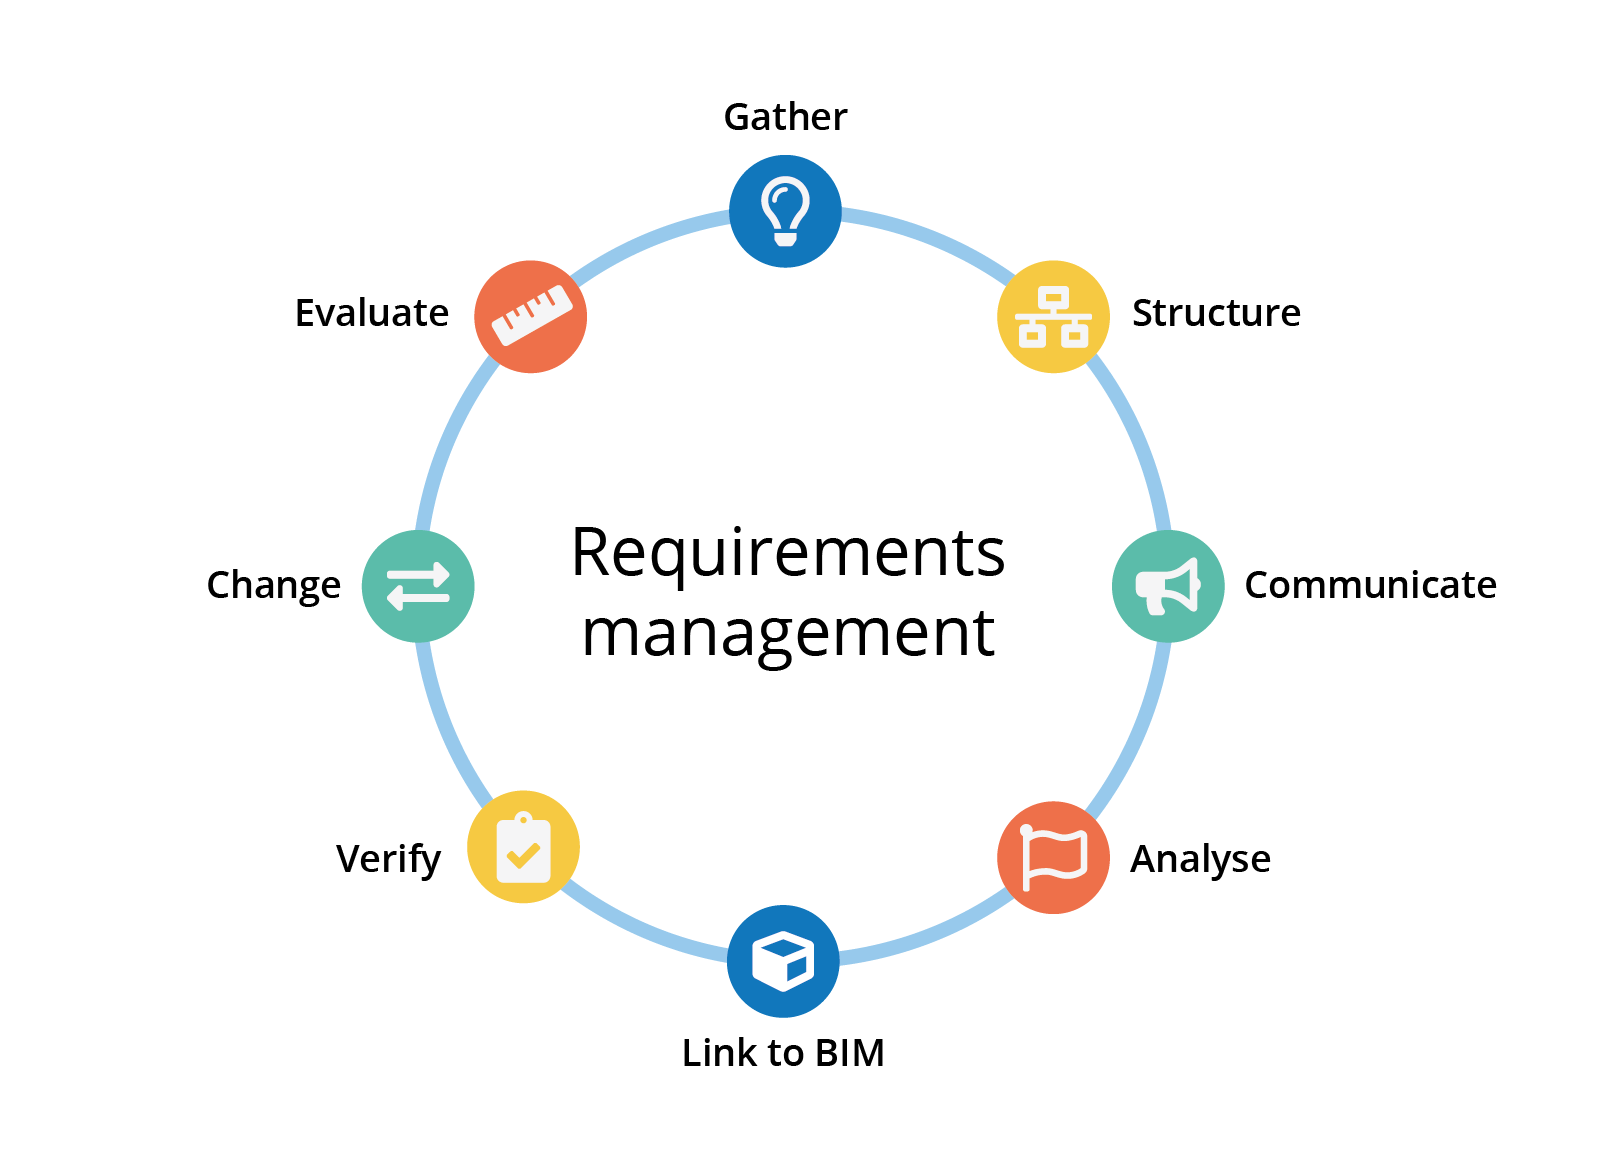 Requirements management